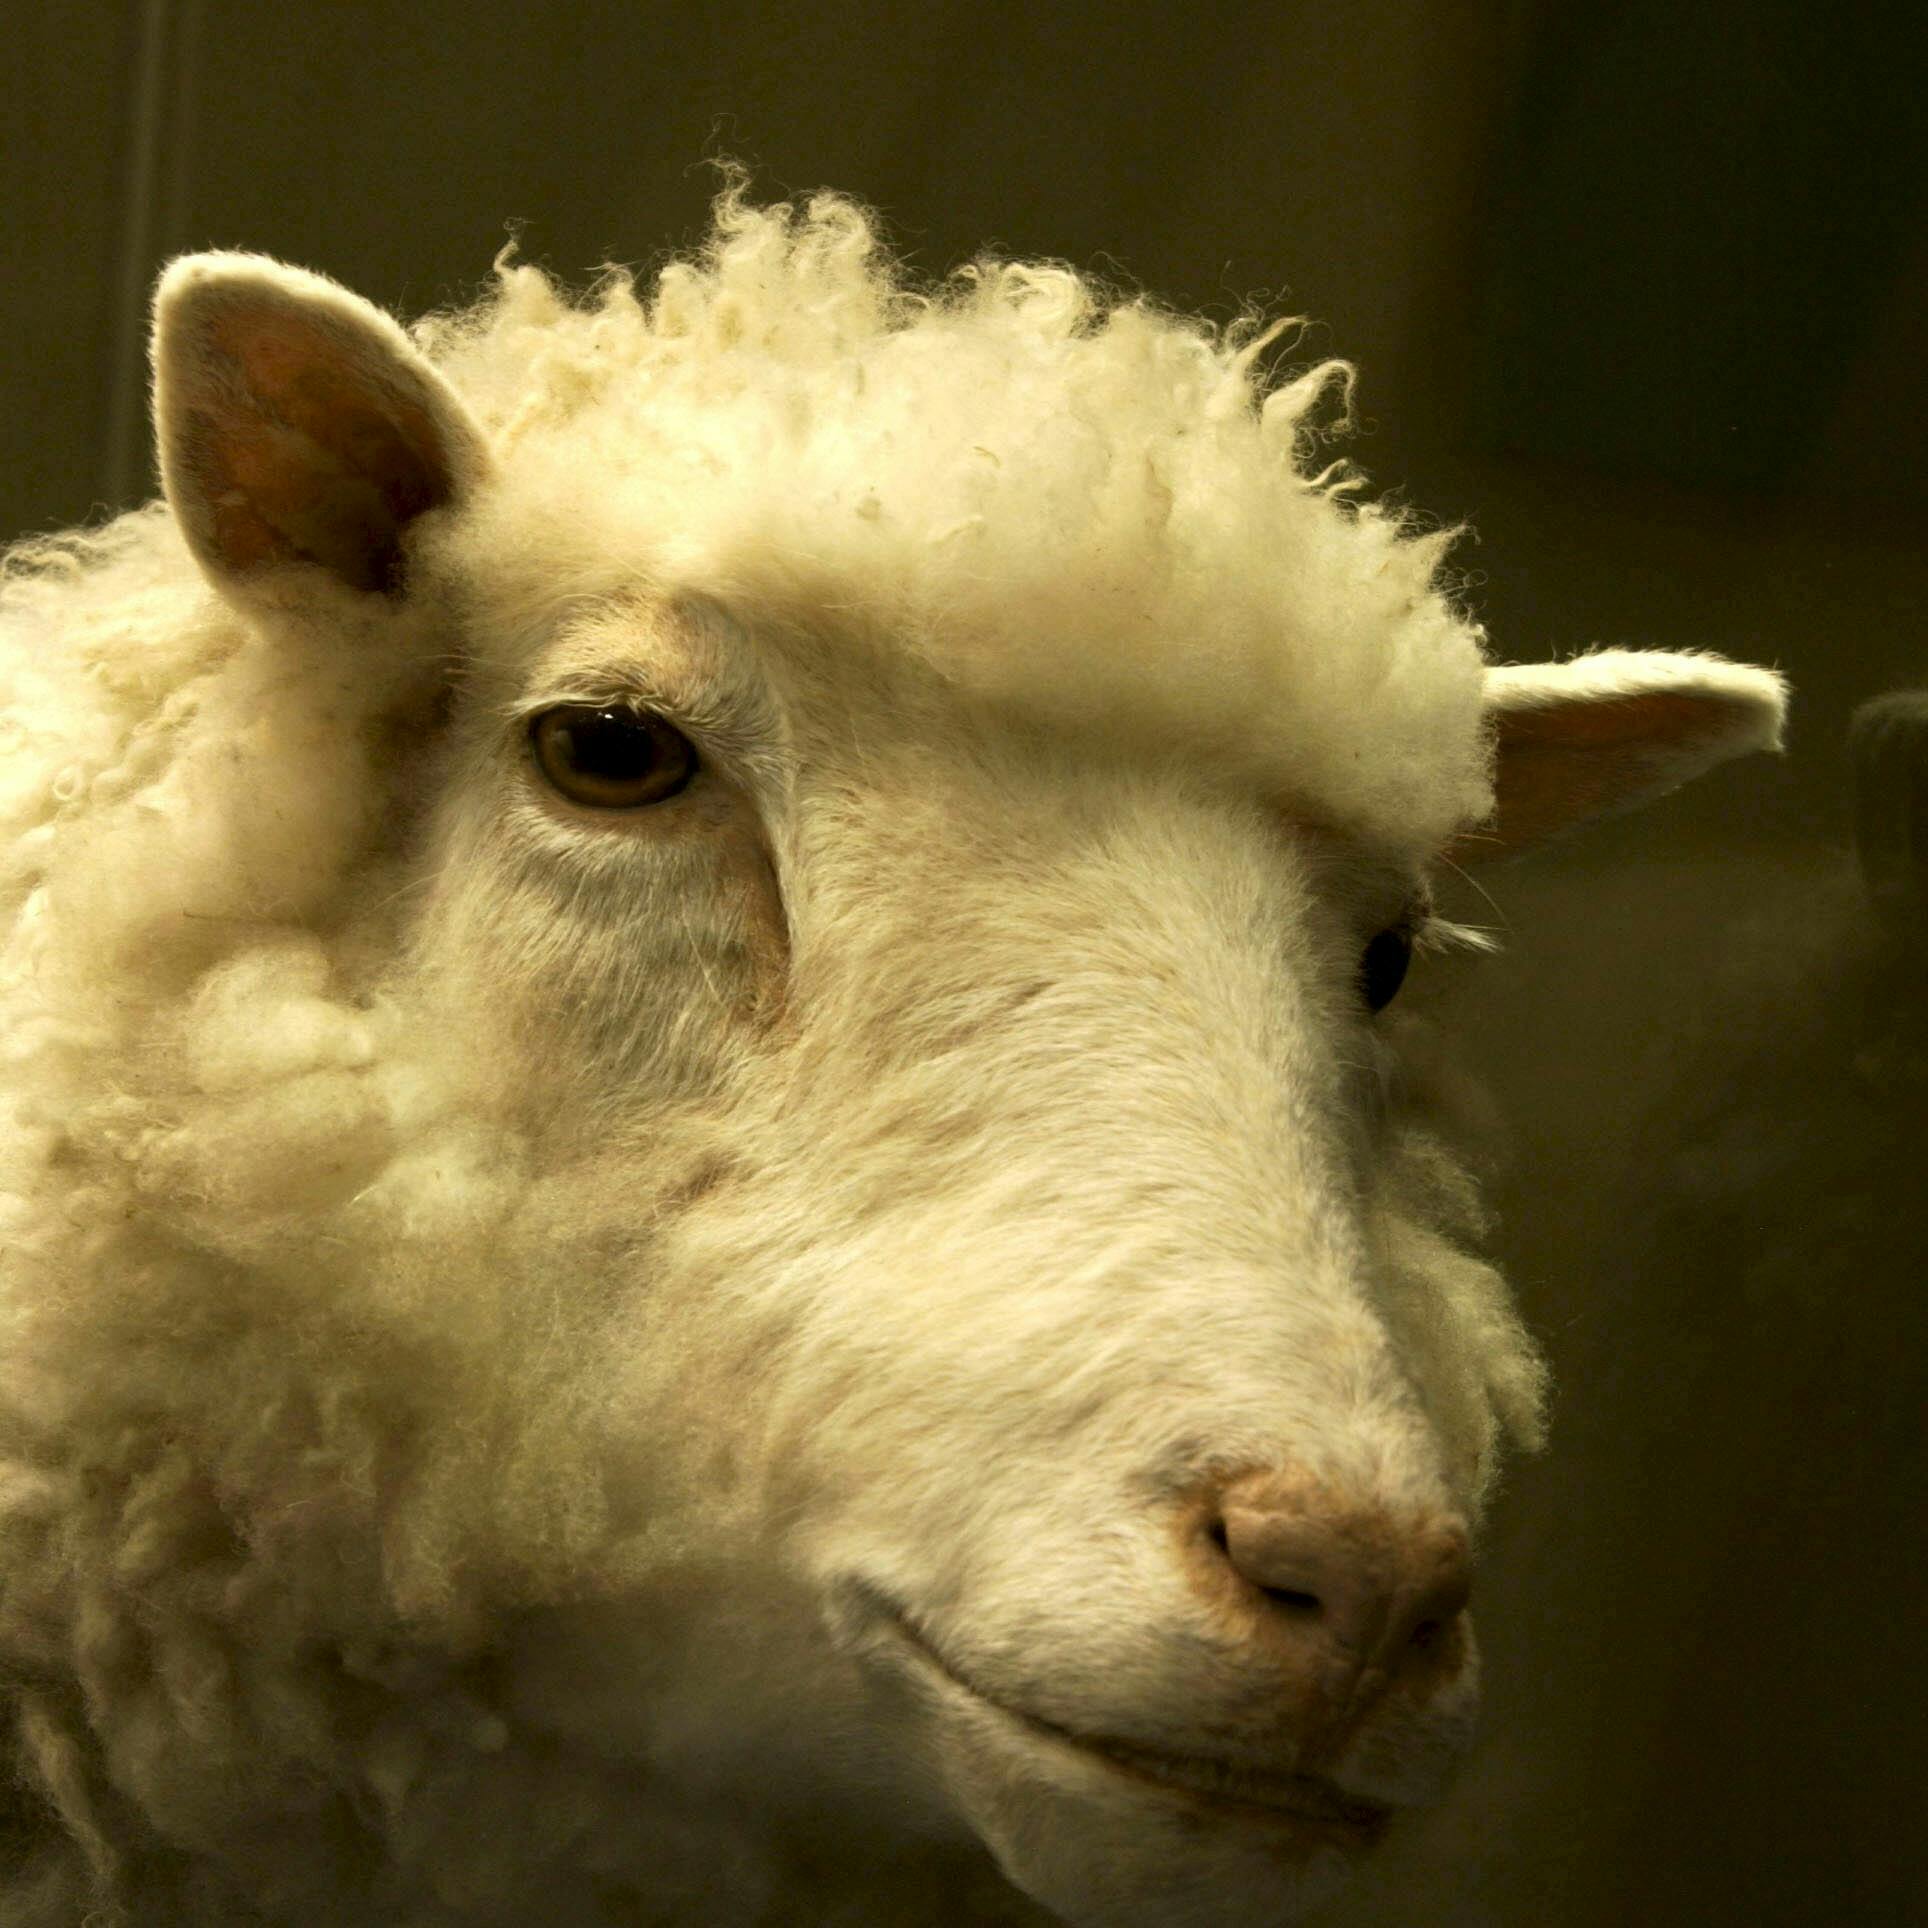 25 jaar geleden werd het 'bijzondere' schaap Dolly geboren